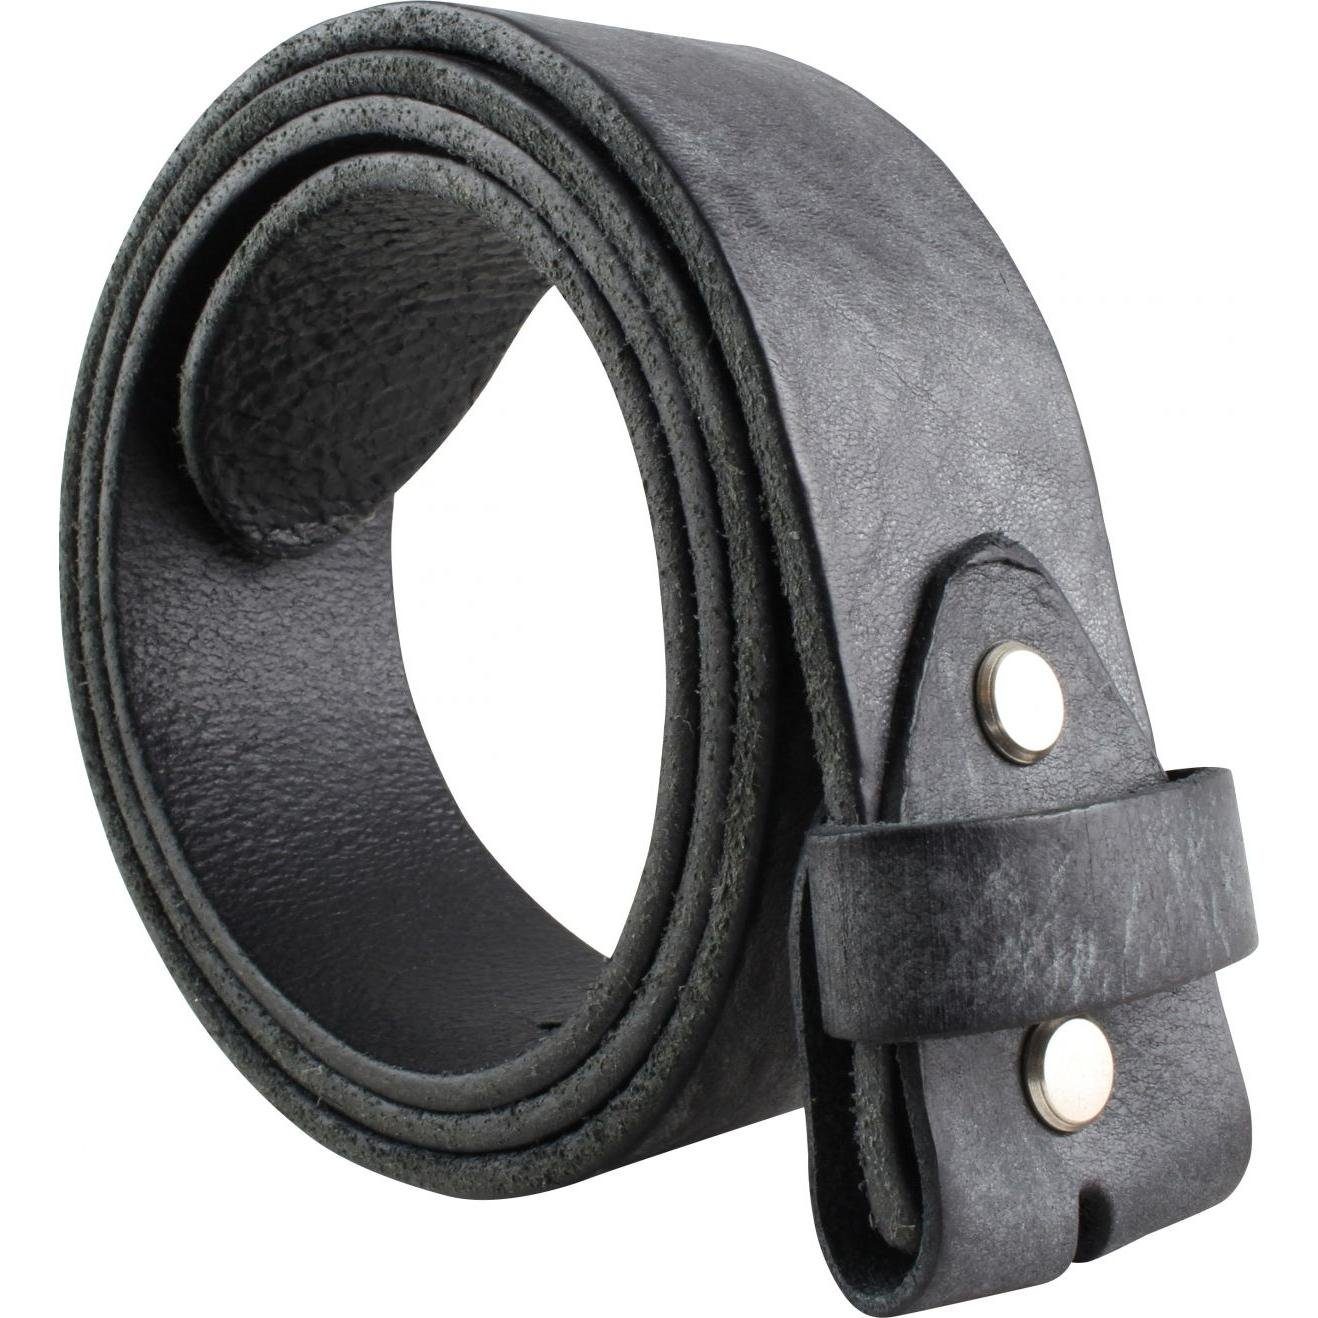 BELTINGER Ledergürtel Gürtel aus Used-Look ohne Vollrindleder Schwarz 4 Jeans- - weichem cm Schnalle